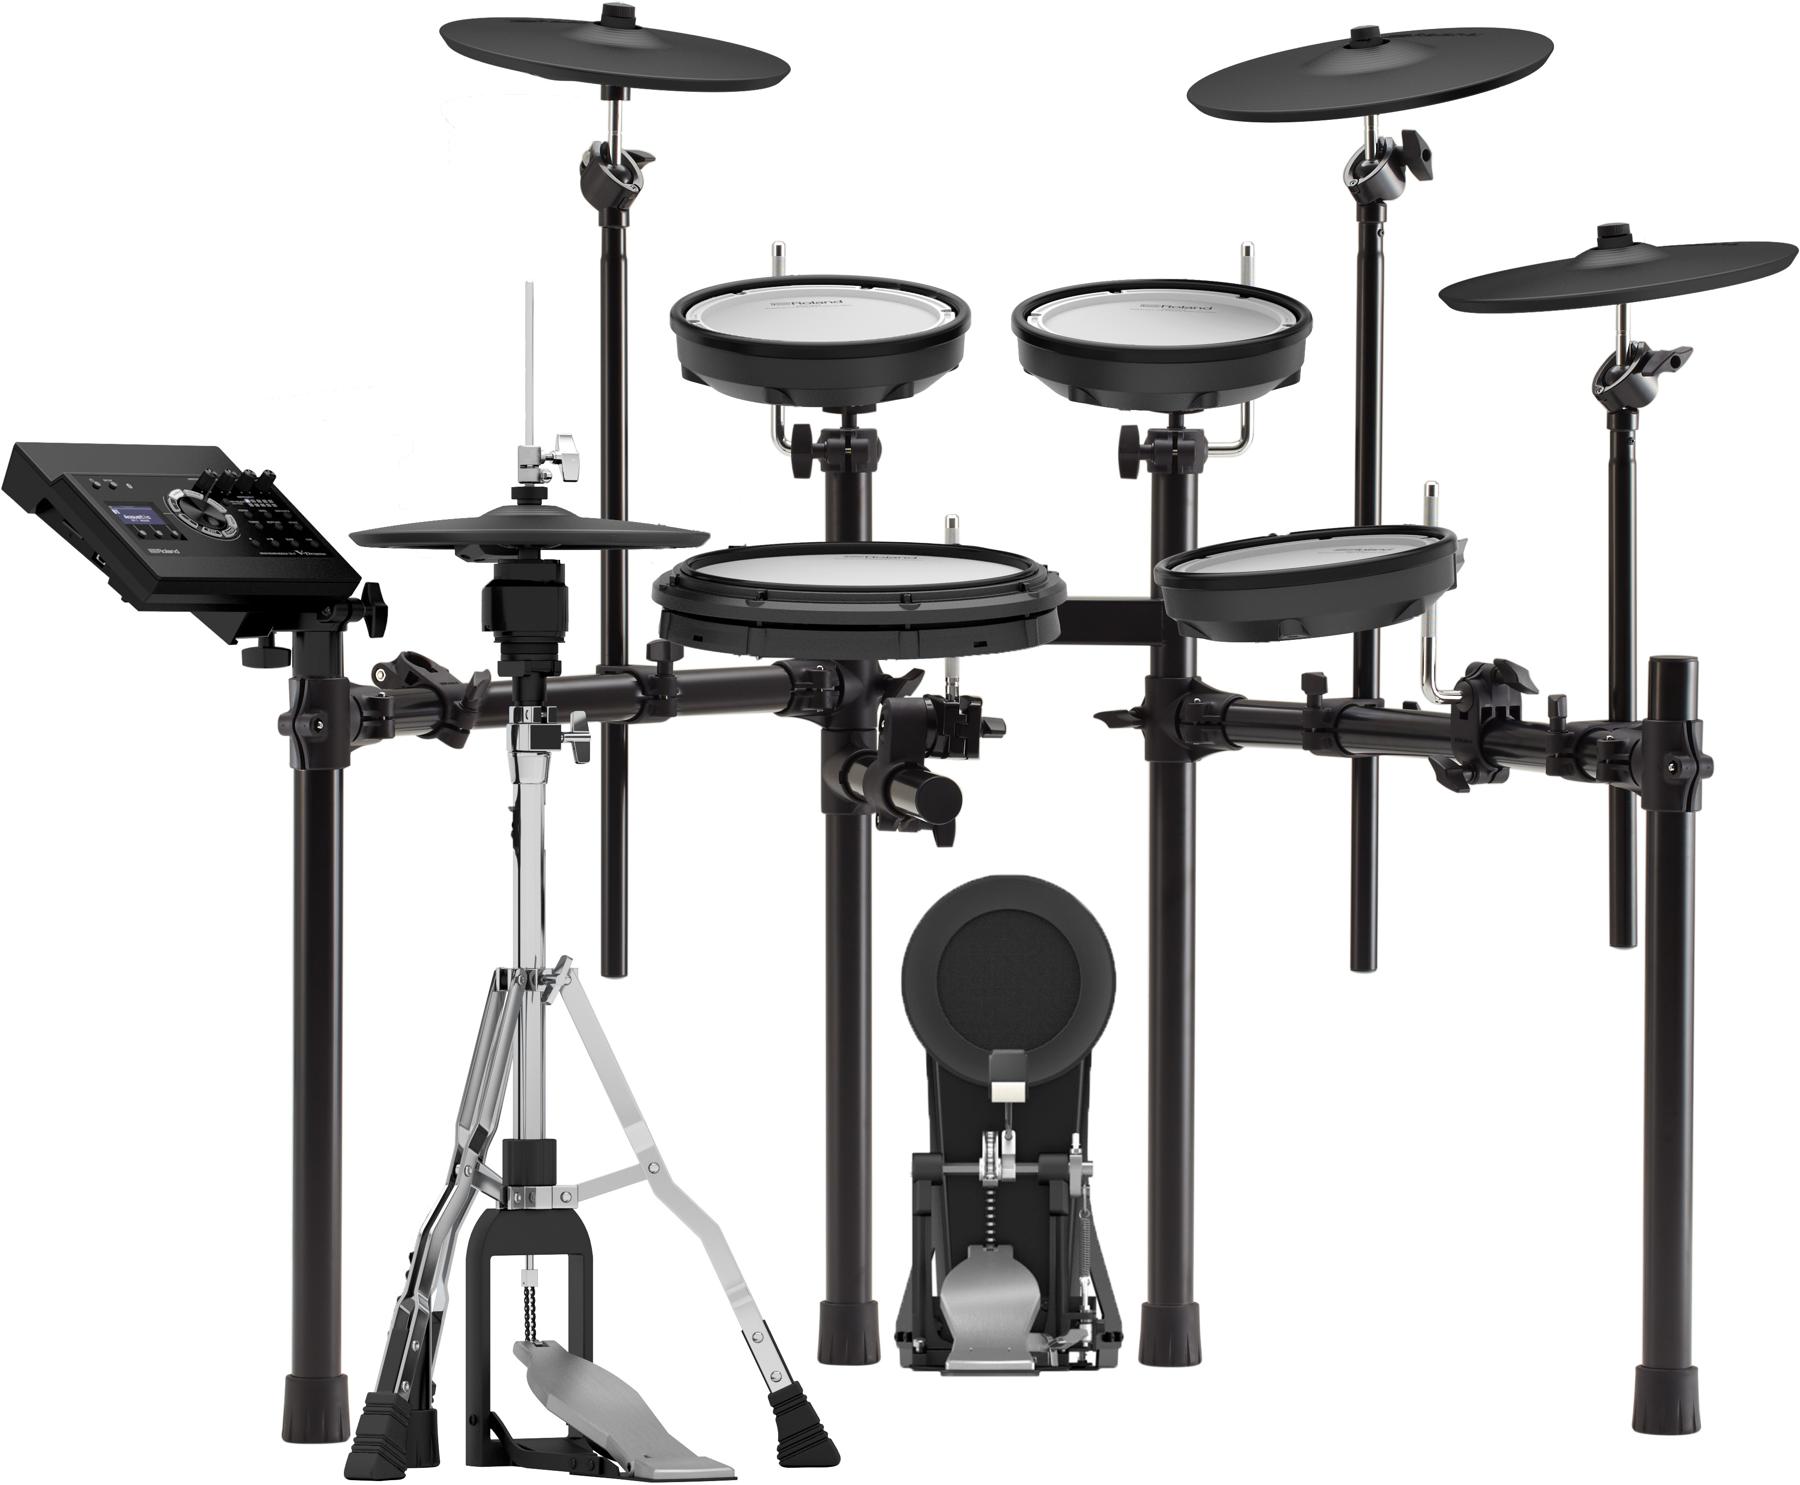 1. Roland V-Drums TD-17KVX Electronic Drum Set